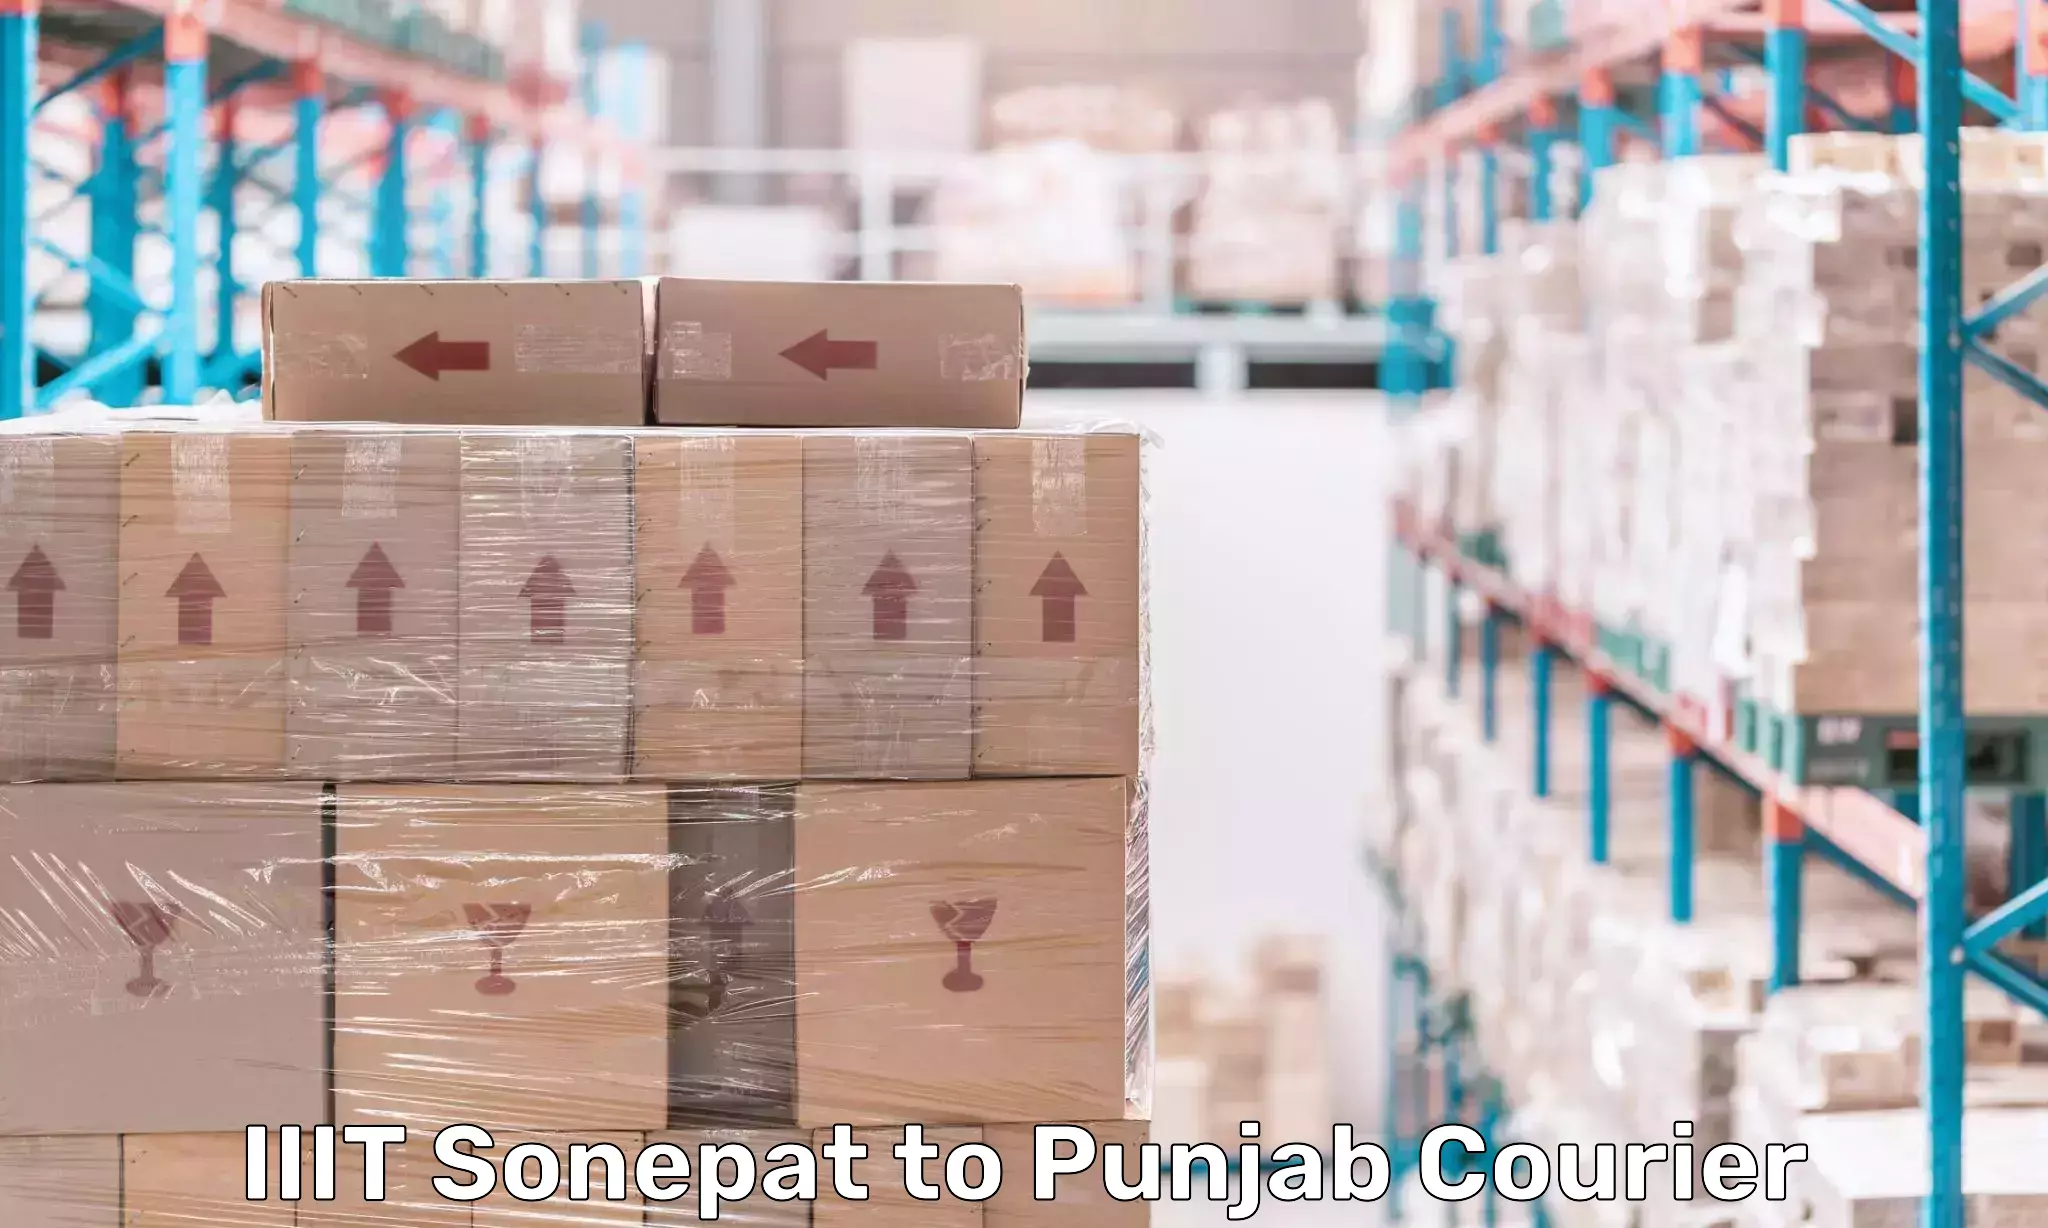 Expedited parcel delivery IIIT Sonepat to Rajpura